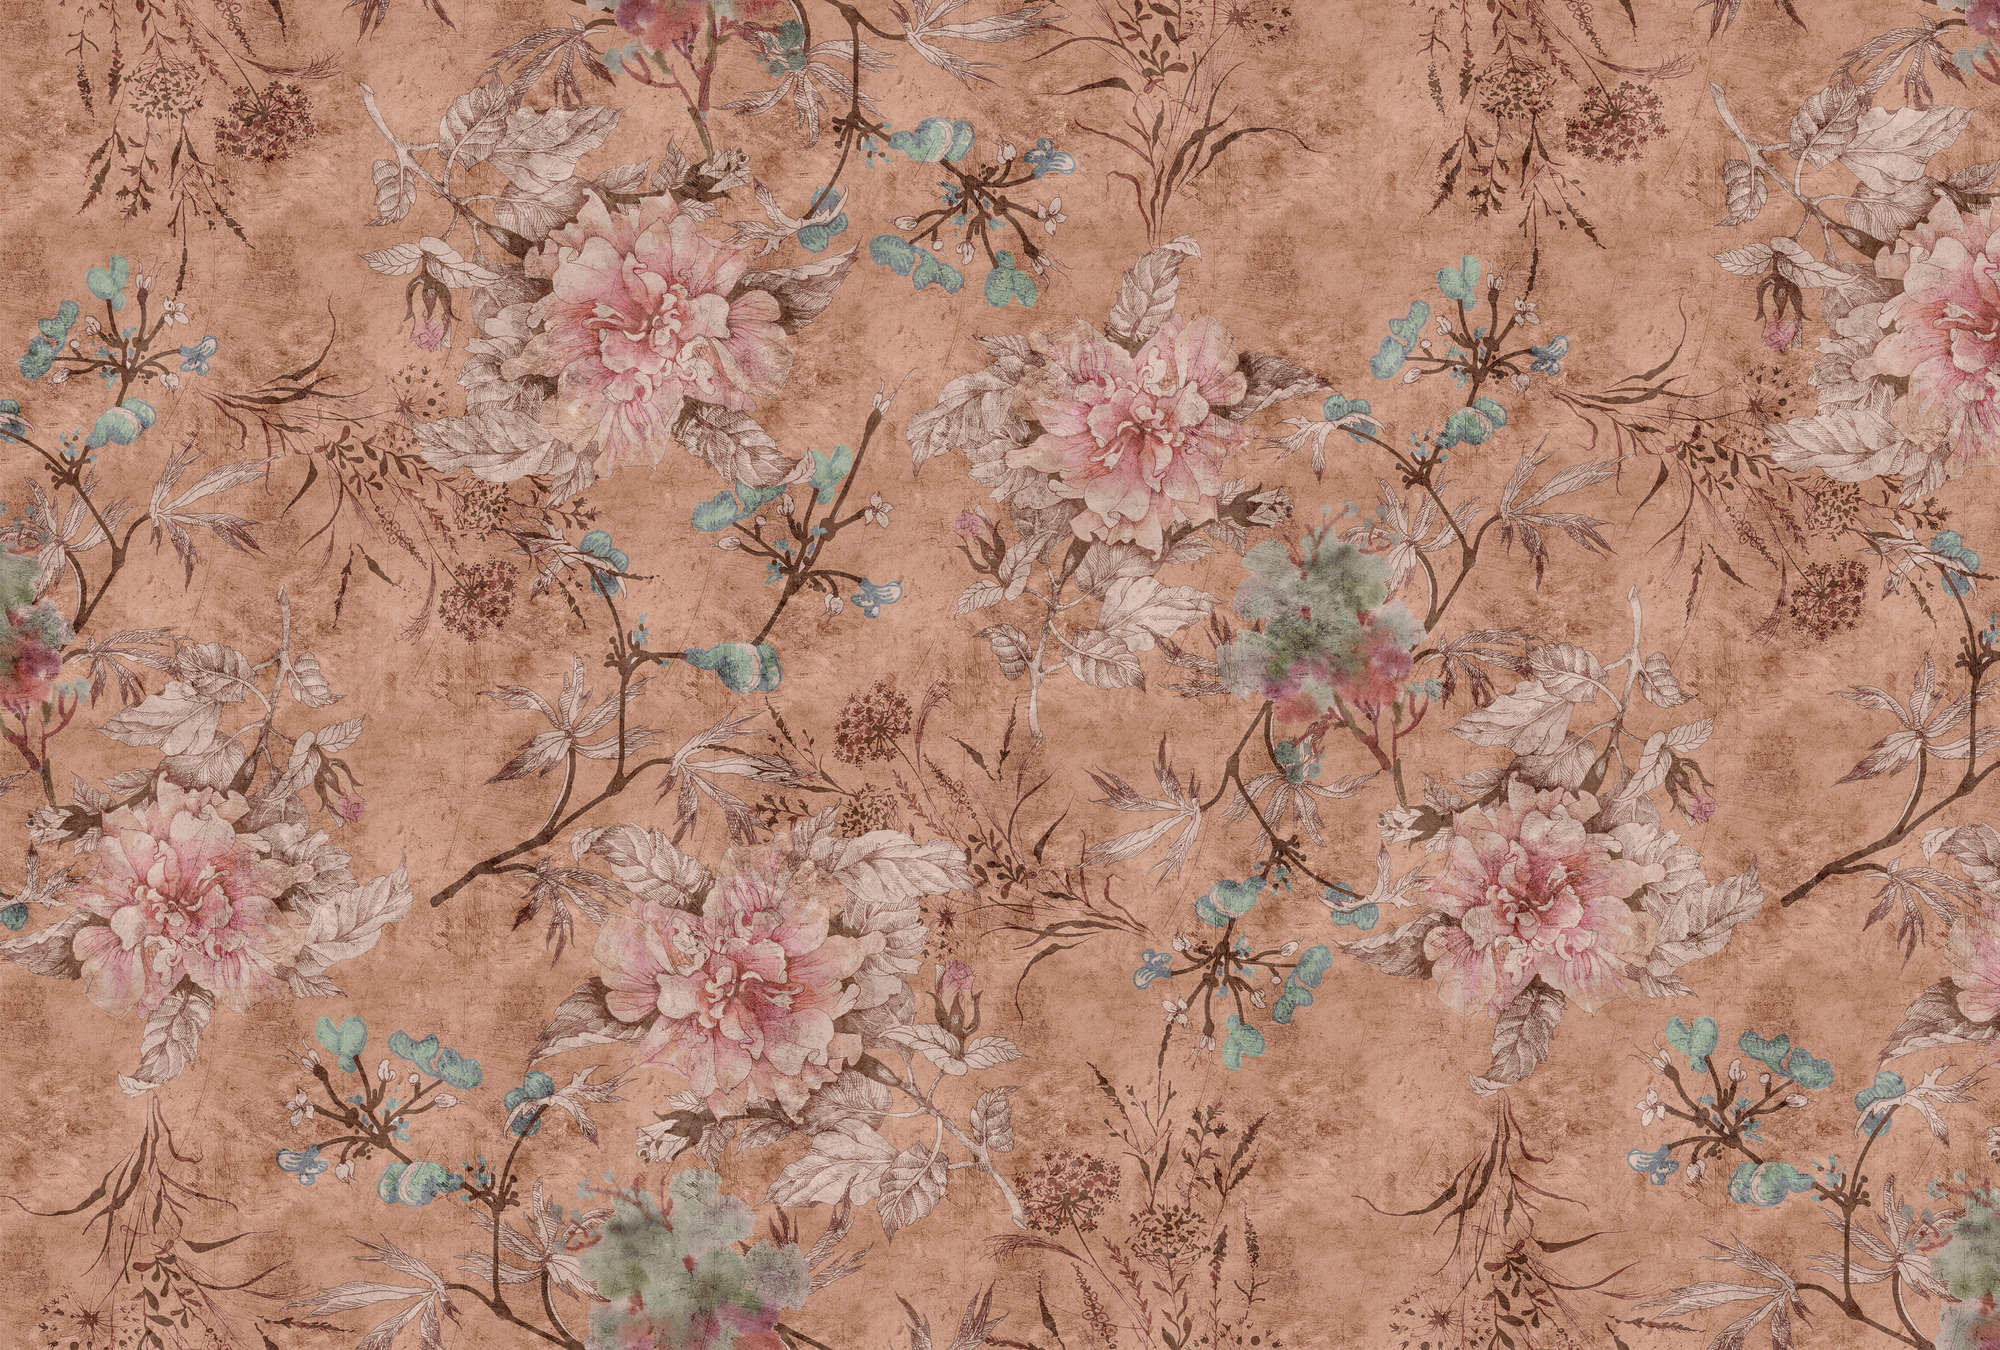             Tenderblossom 3 - Papel pintado digital estampado floral estilo vintage - Rosa, Rojo | Tejido sin tejer liso mate
        